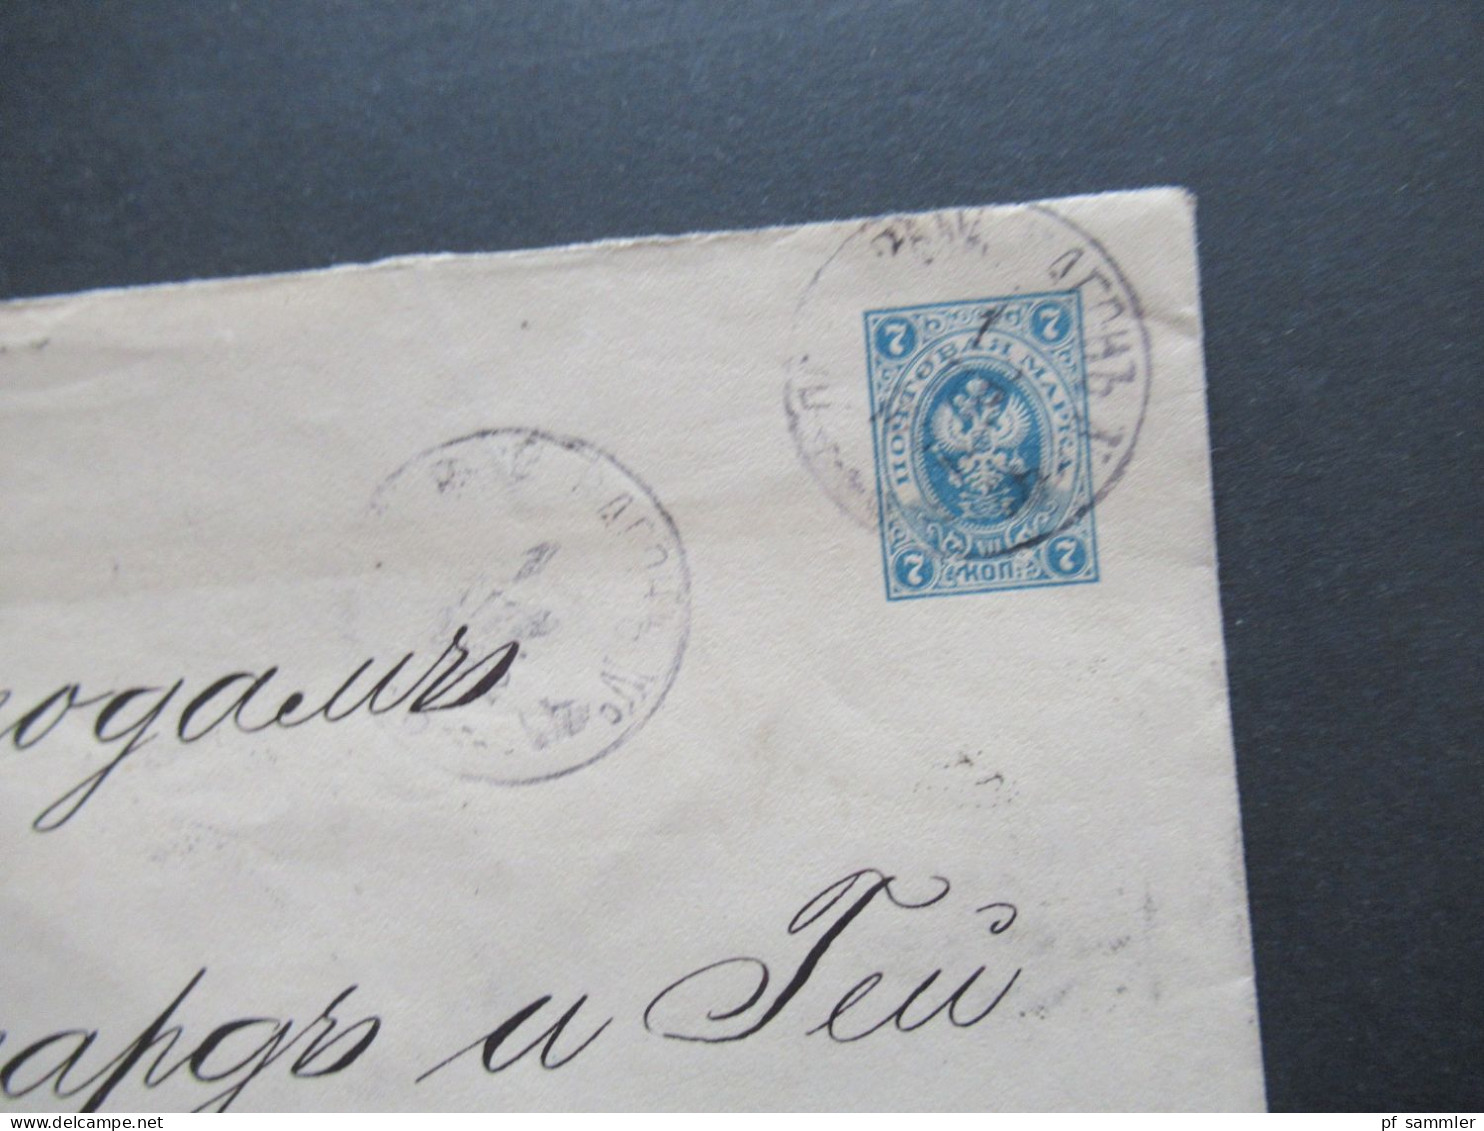 Russland Ganzsachen Posten mit PK und Umschlägen ab ca. 1870er Jahre! Interessanter Posten! 10 Stück